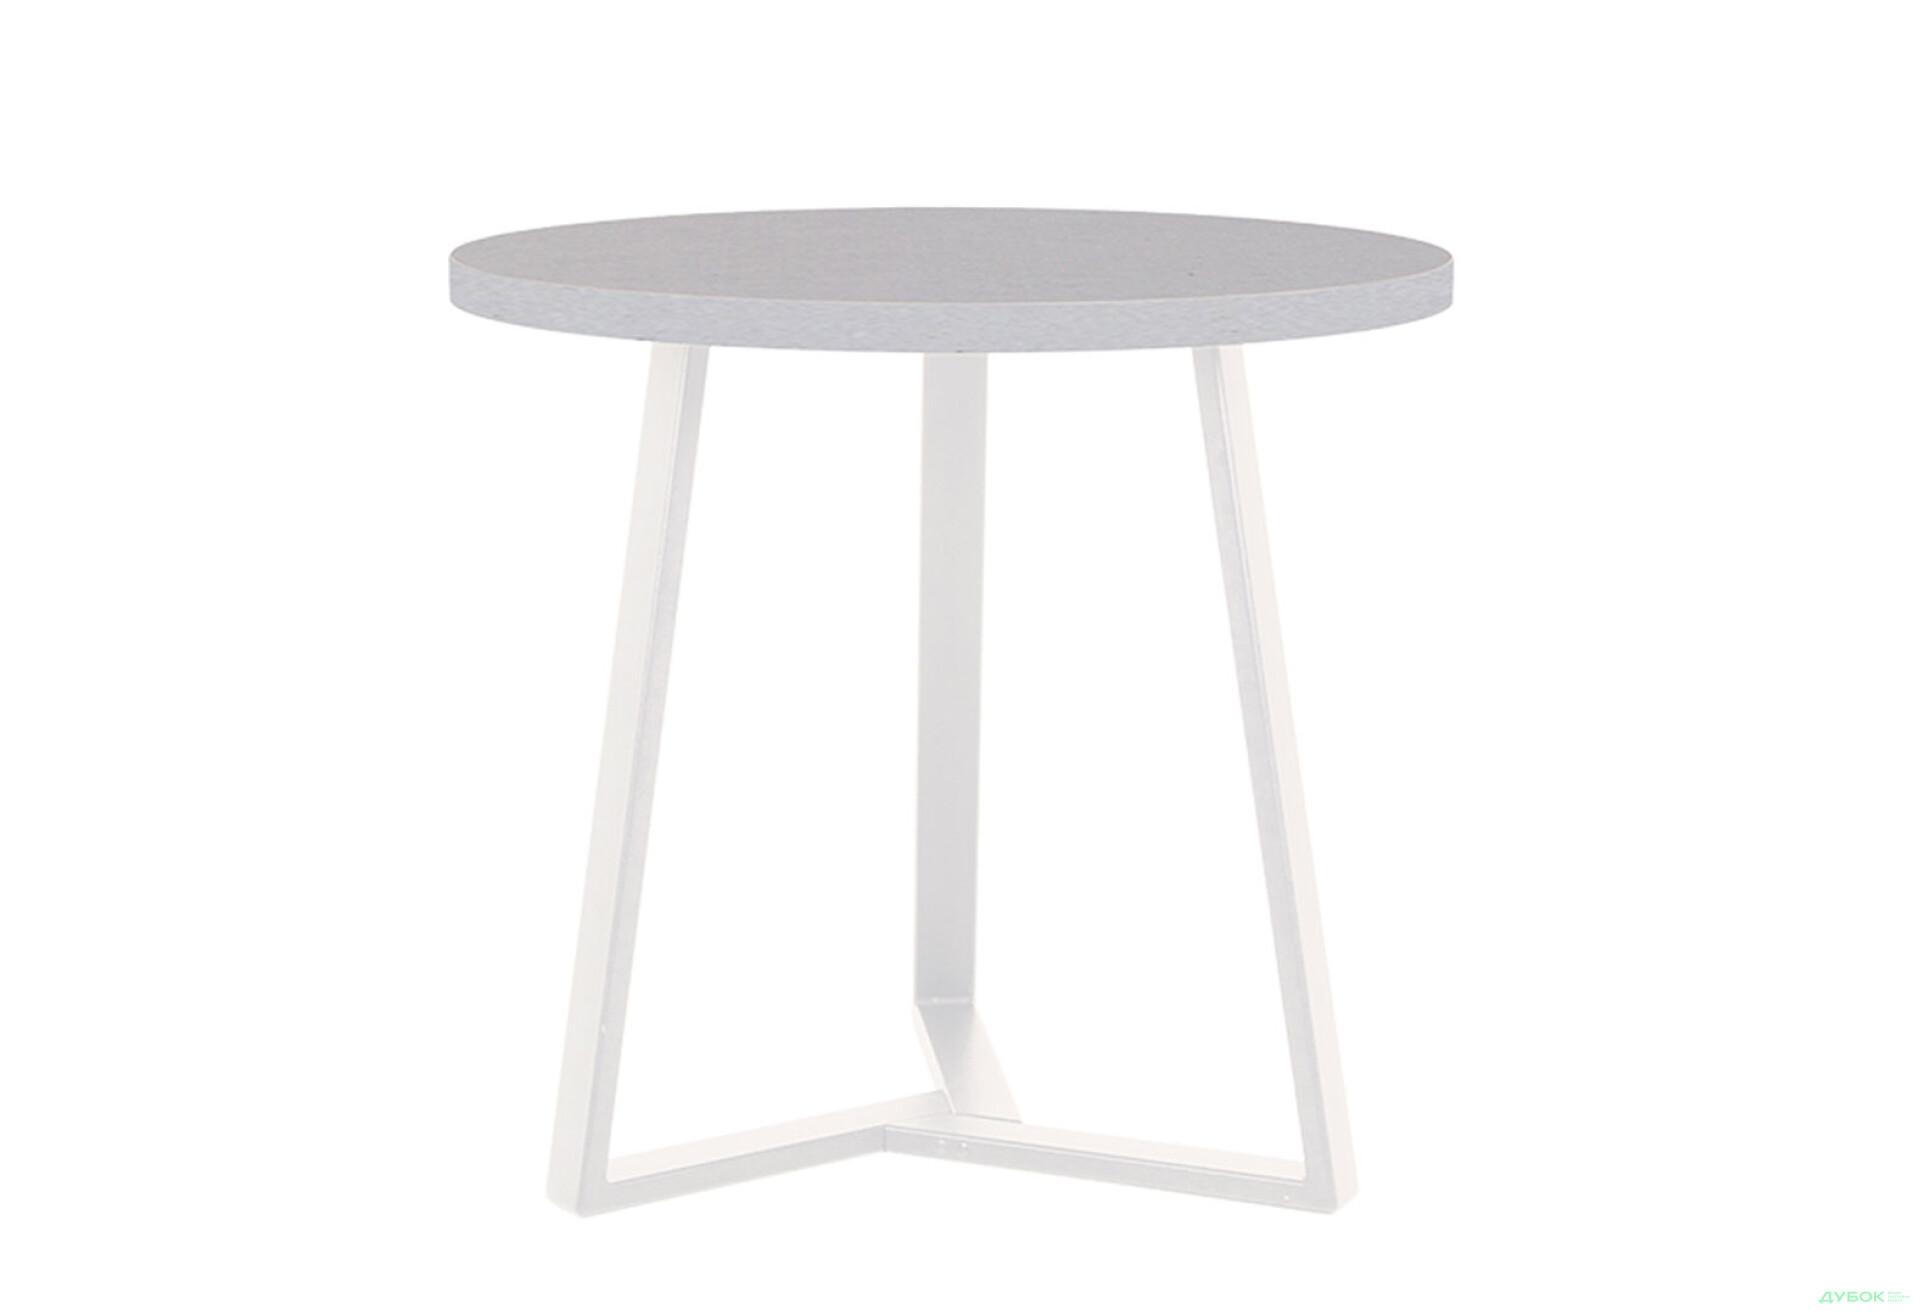 Фото 1 - Стол обеденный Новый Стиль Calipso white (36) D800 80x80 см, серый